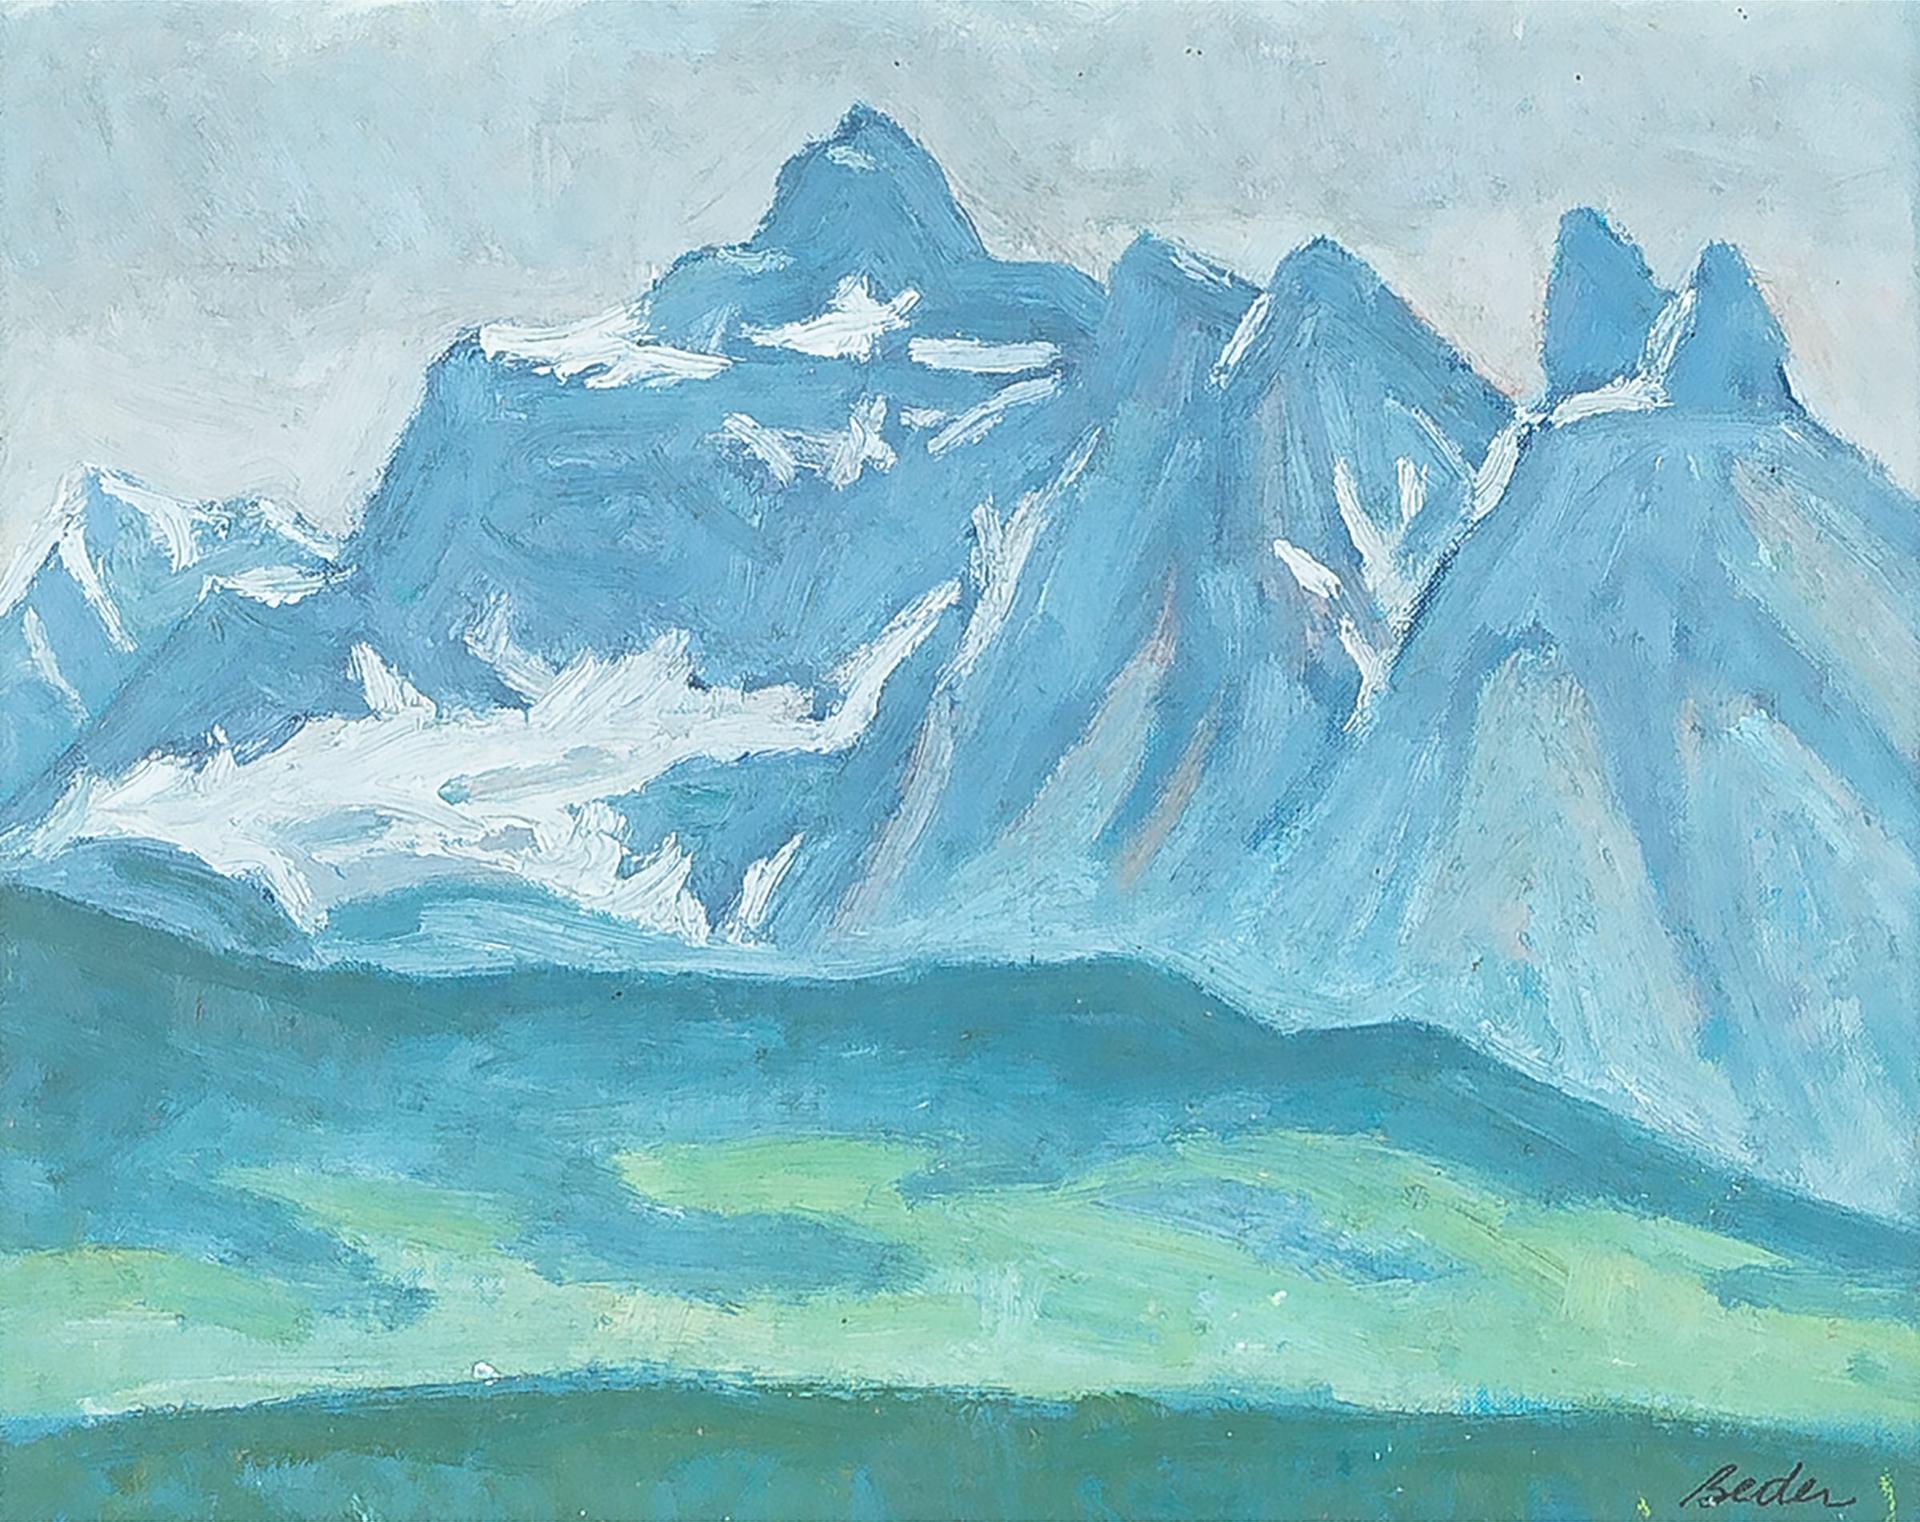 Jack Beder (1910-1987) - Peaks In The Haze (Jasper National Park), 1970